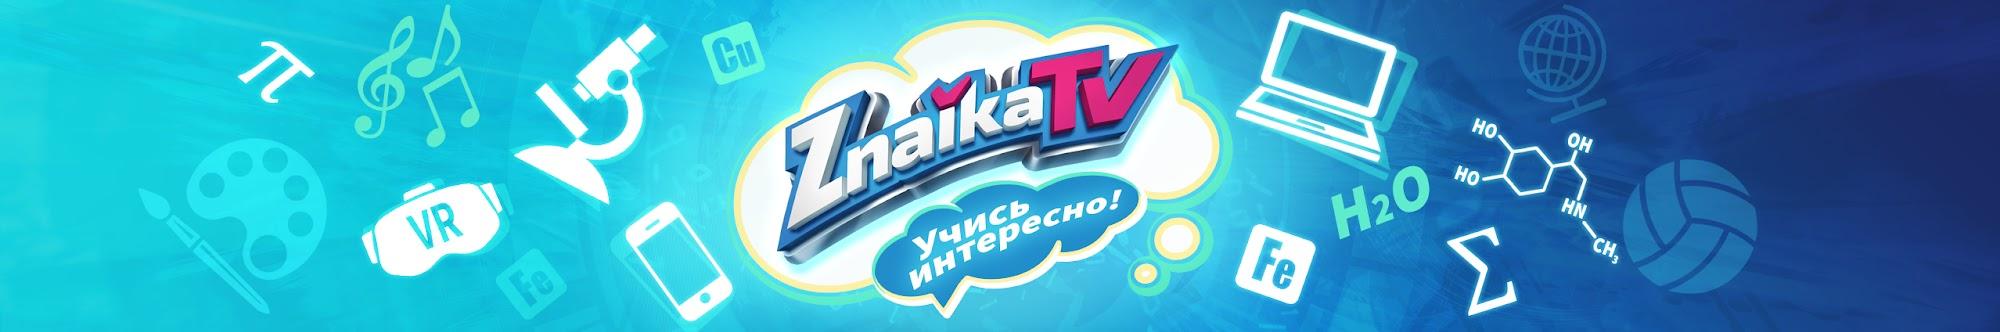 Образование. Обучение - Znaika TV. Знайка.ру